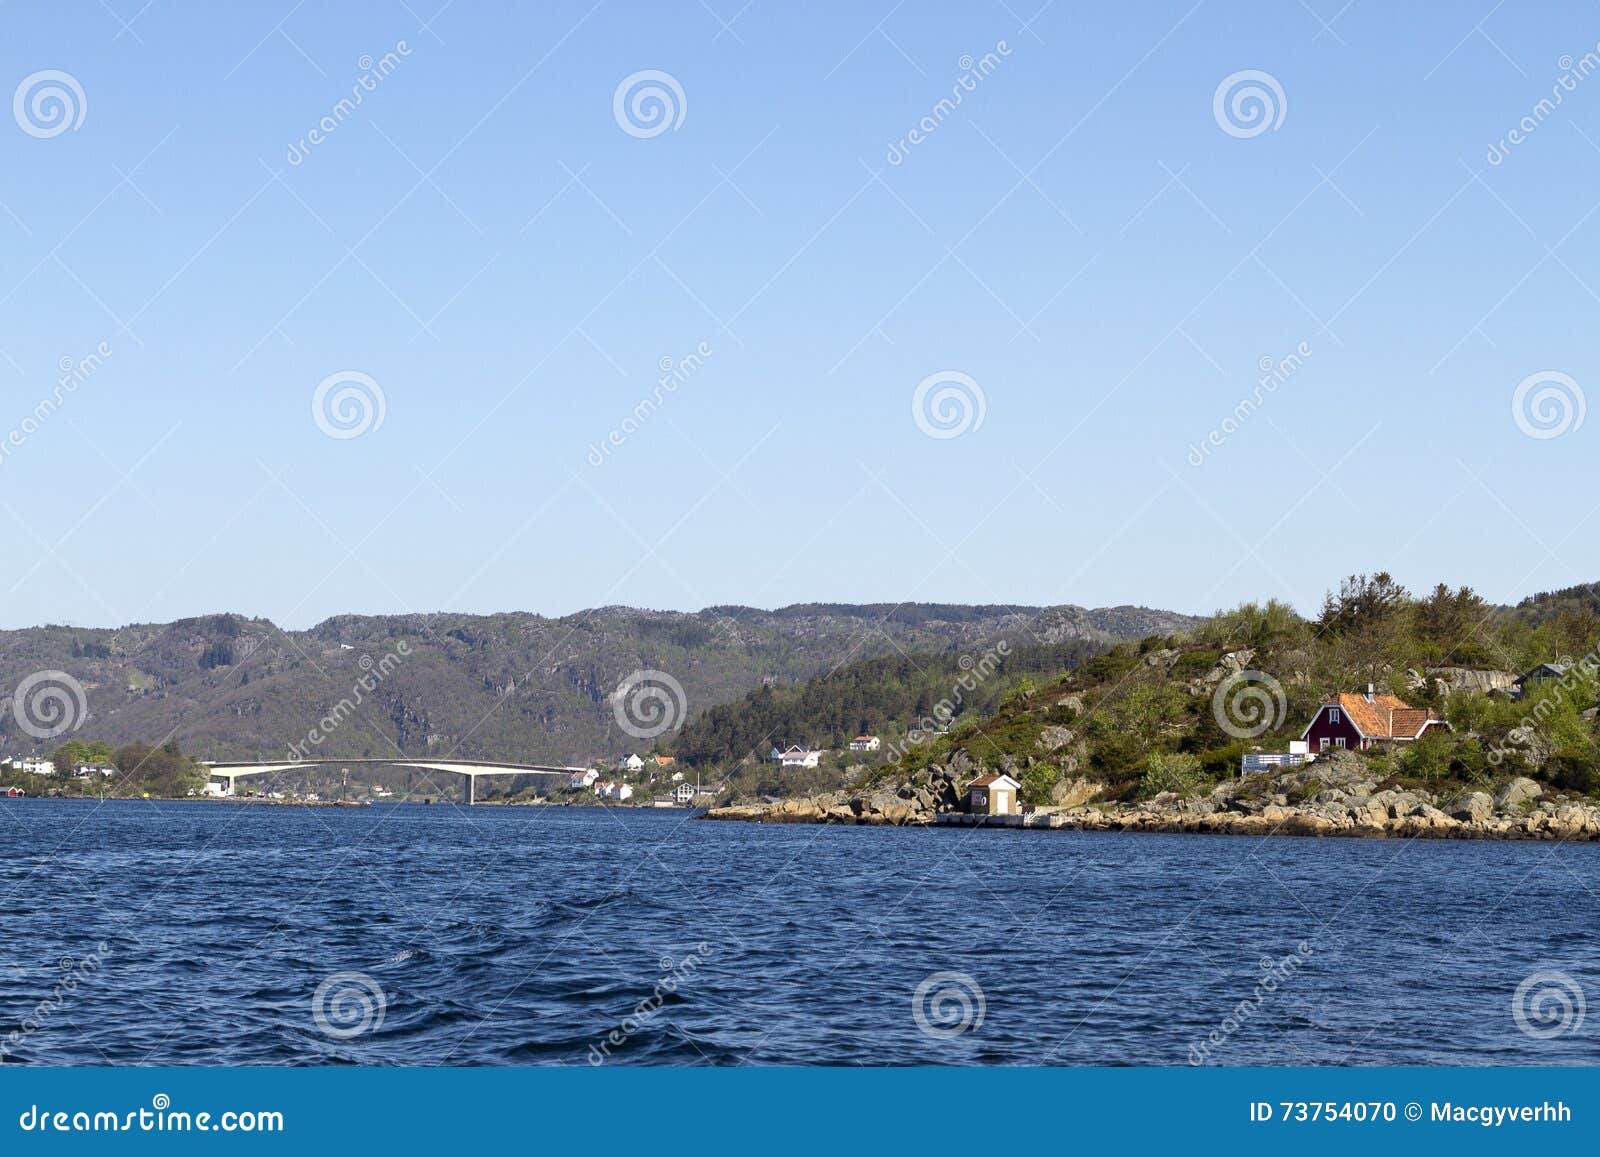 Norway coastline stock photo. Image of cottage, nature - 73754070